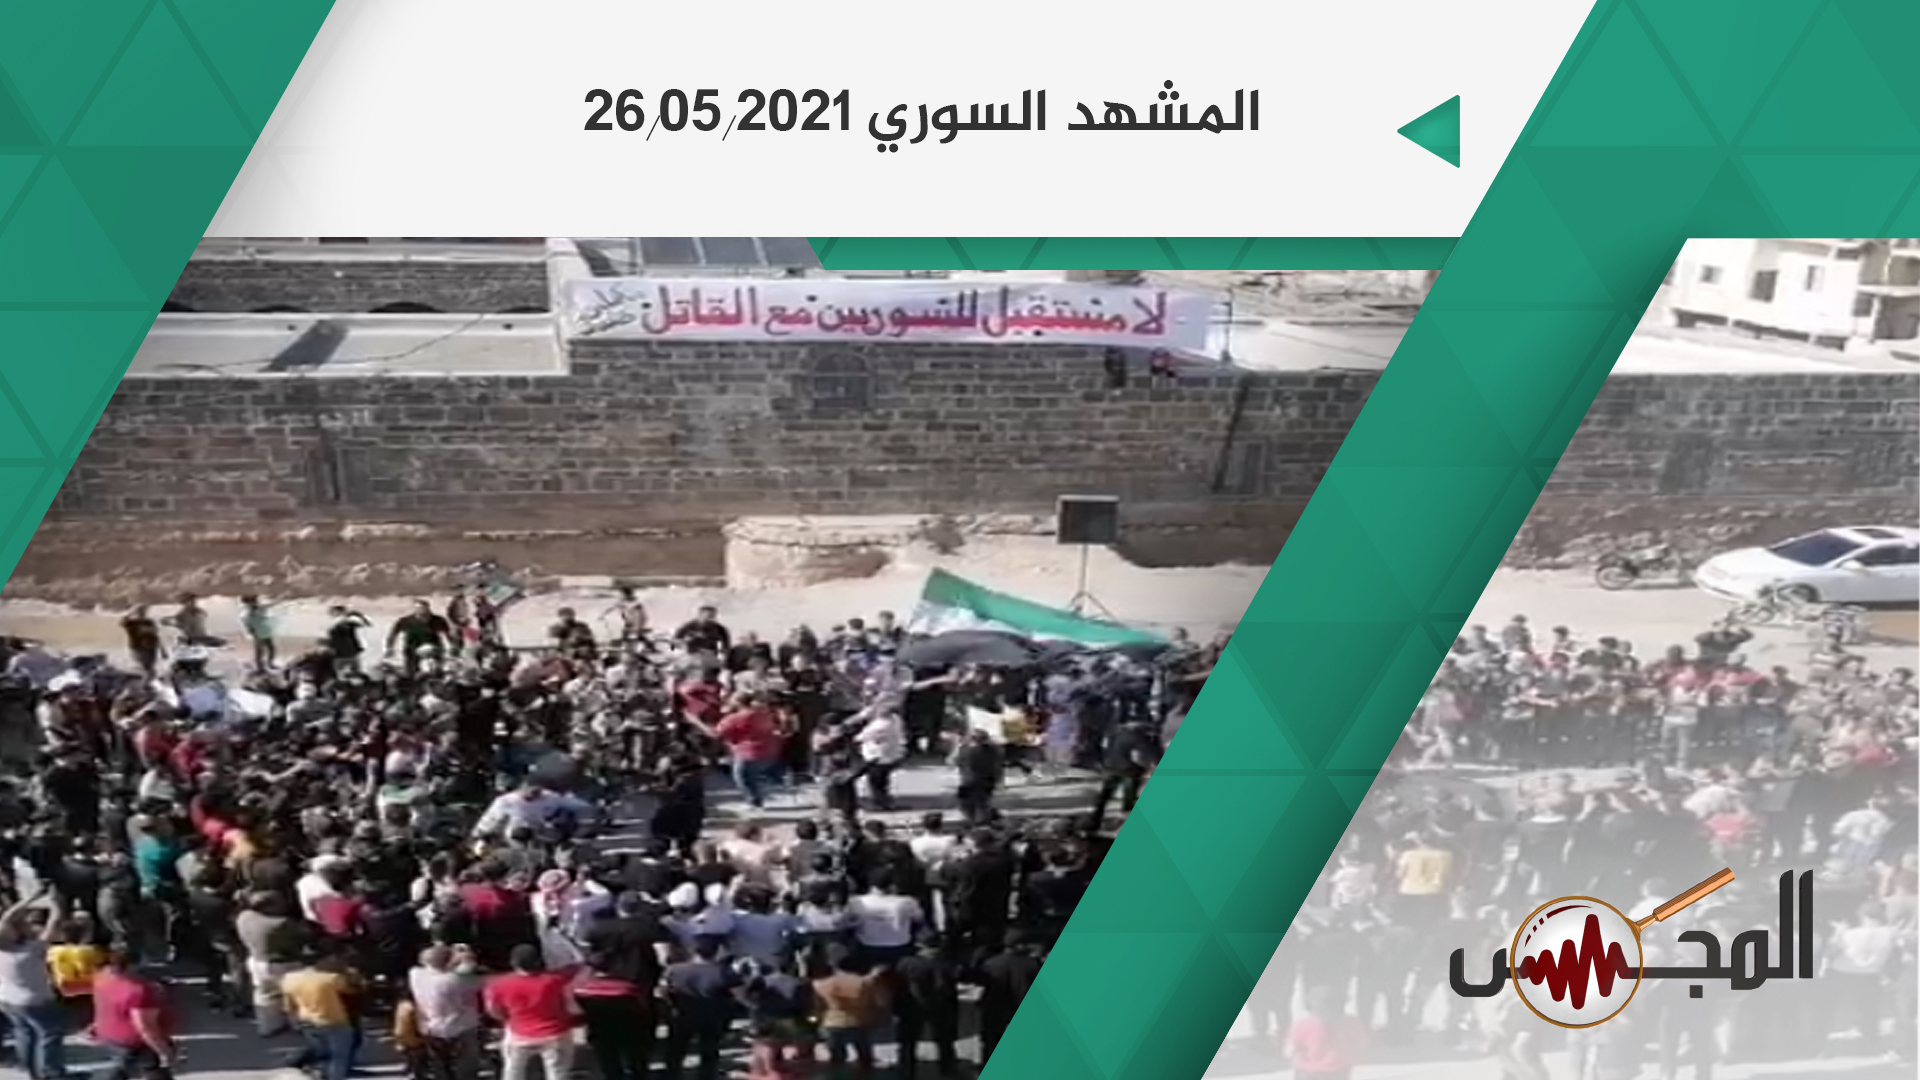 المشهد السوري في 26.05.2021